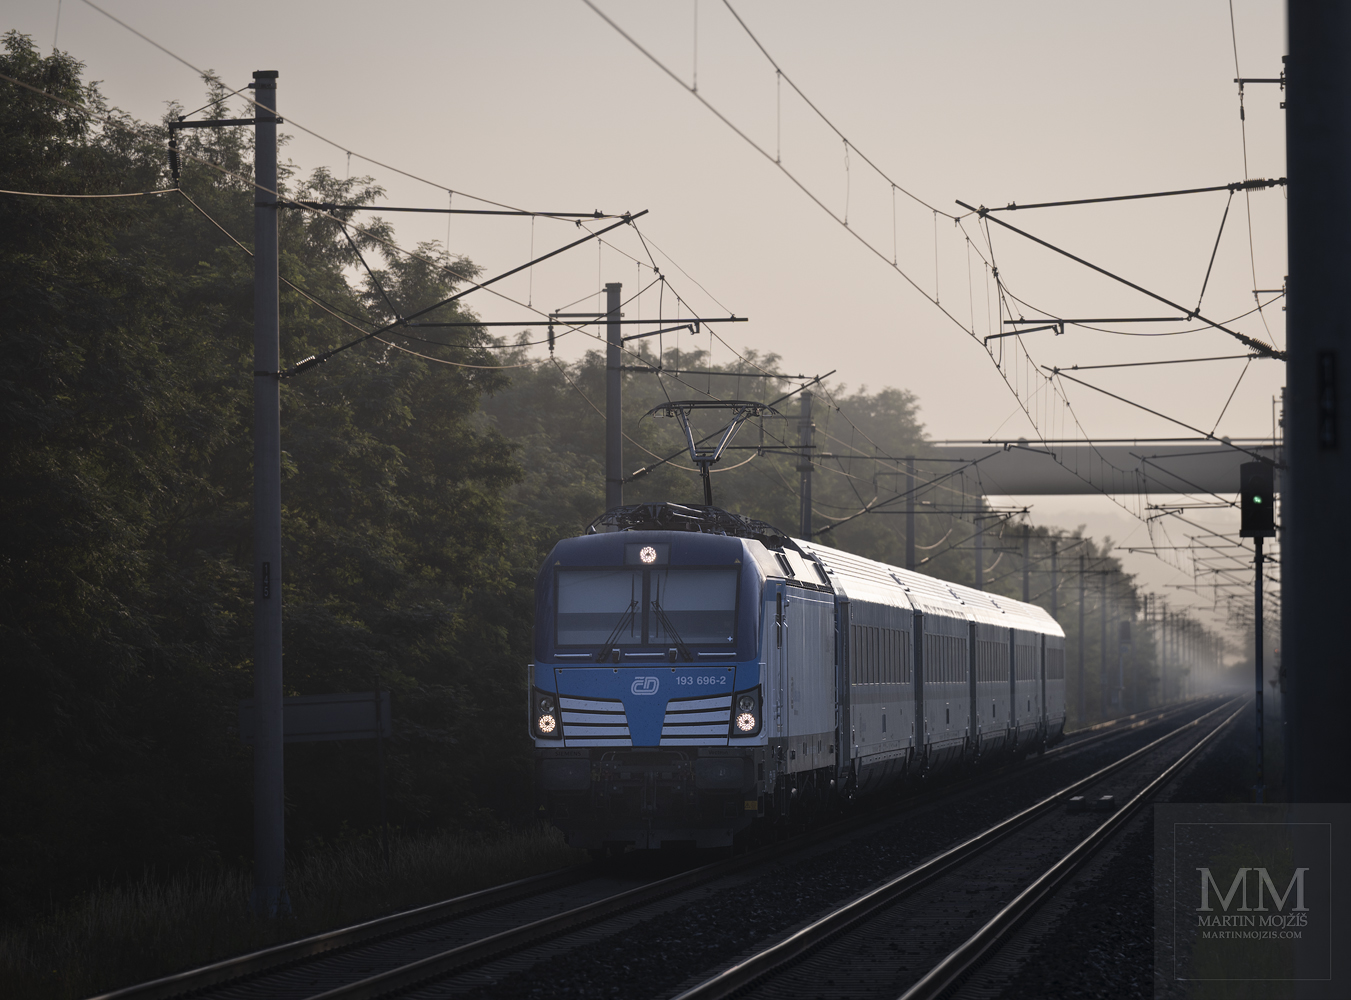 Lokomotiva Siemens Vectron 193 696-2 dopravce České dráhy v čele osobního vlaku ve směru Kralupy nad Vltavou.